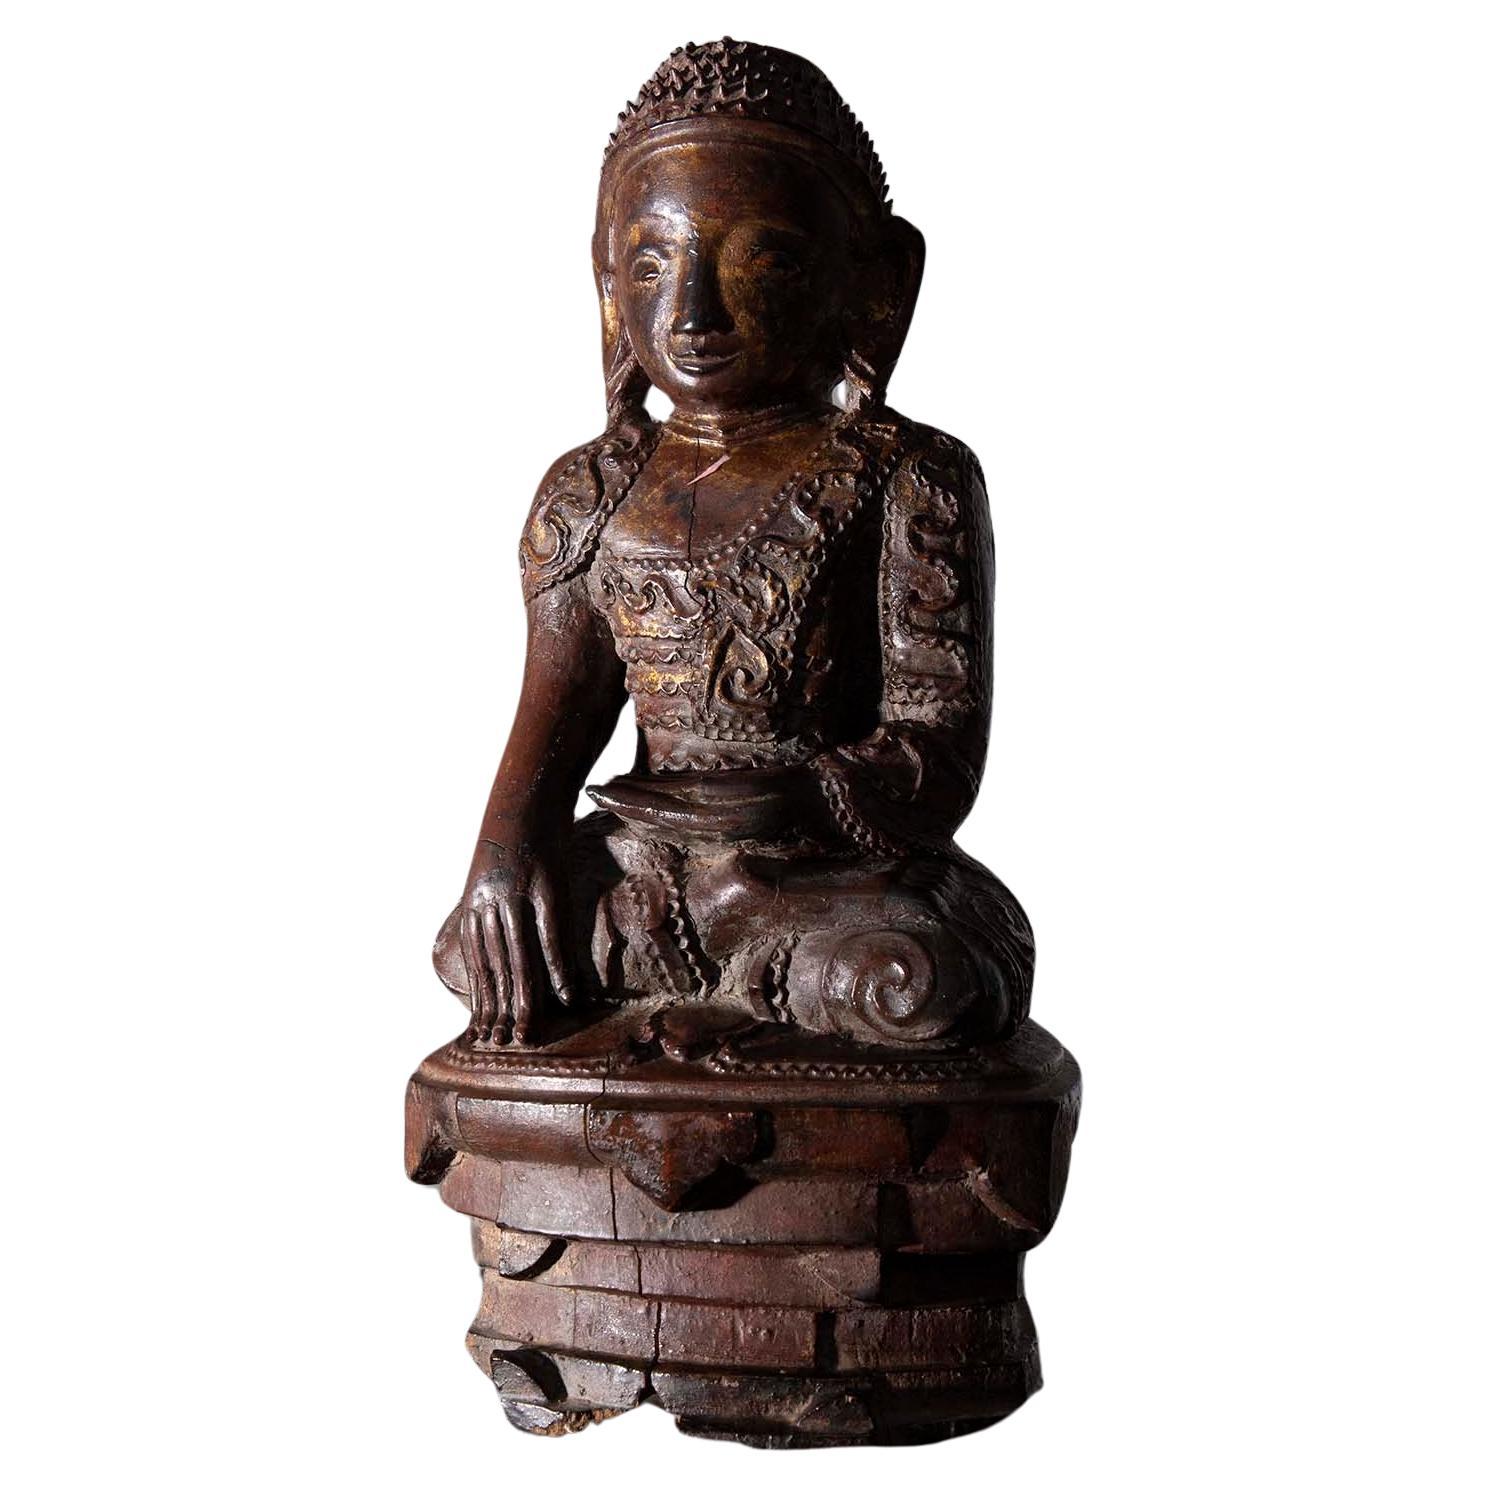 Grande sculpture de Bouddha en bois probablement du Laos, 19e-20e siècle